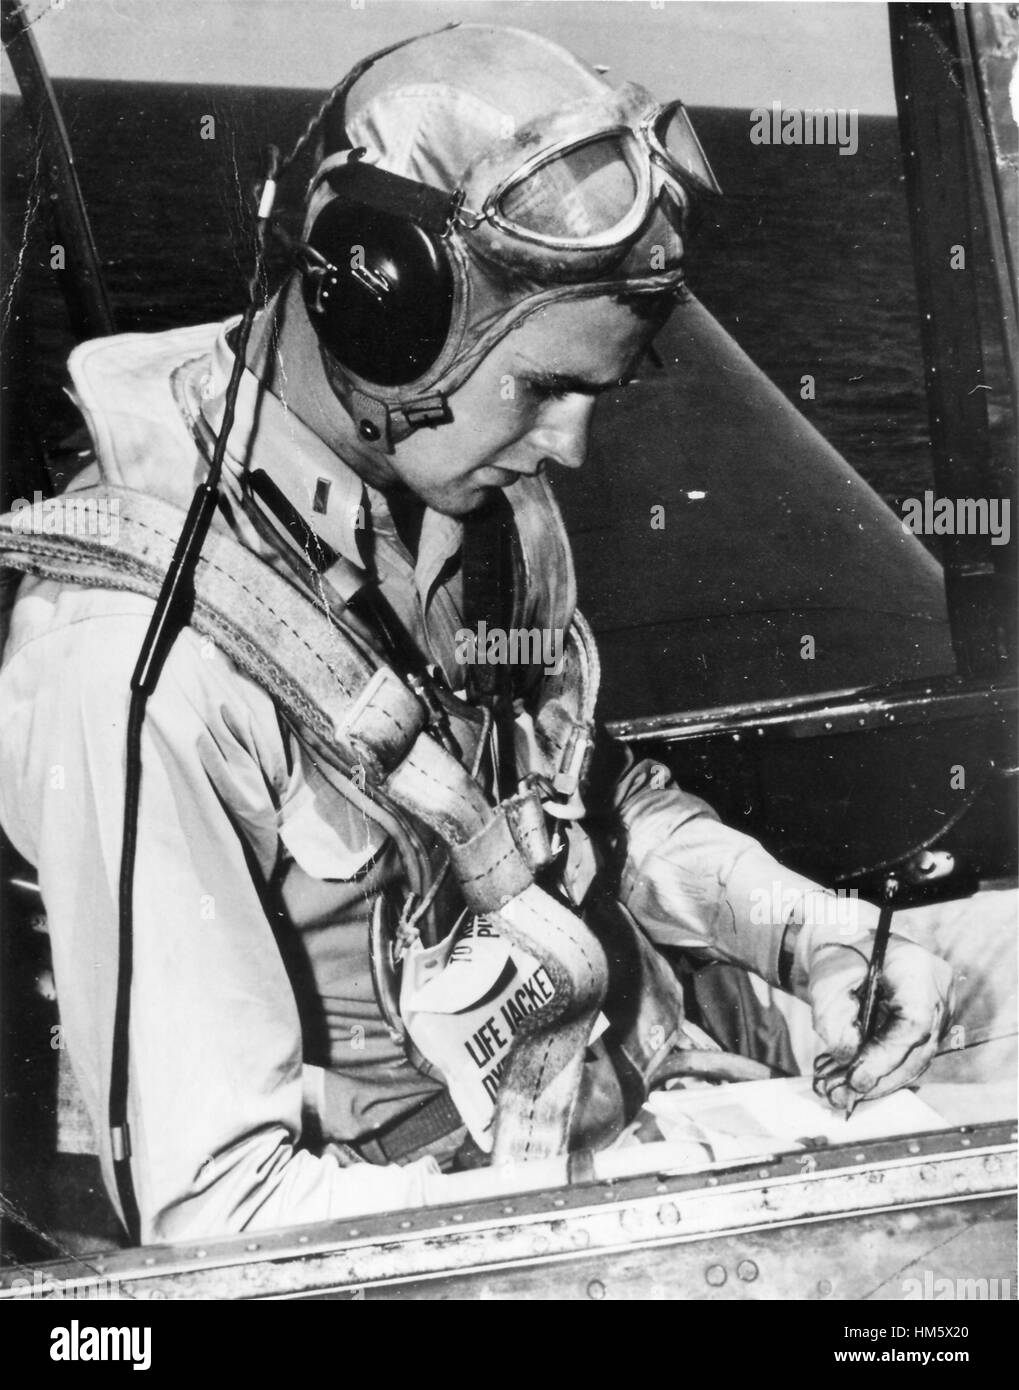 Foto sin fecha del futuro Presidente de los Estados Unidos George H.W. Bush como un piloto de la Marina de los Estados Unidos sentado en la cabina de un vengador. Bush se alistó en la Marina de los EE.UU. como un marinero de segunda clase, en su 18 cumpleaños, 12 de junio de 1942. Recibió sus alas y comi Foto de stock